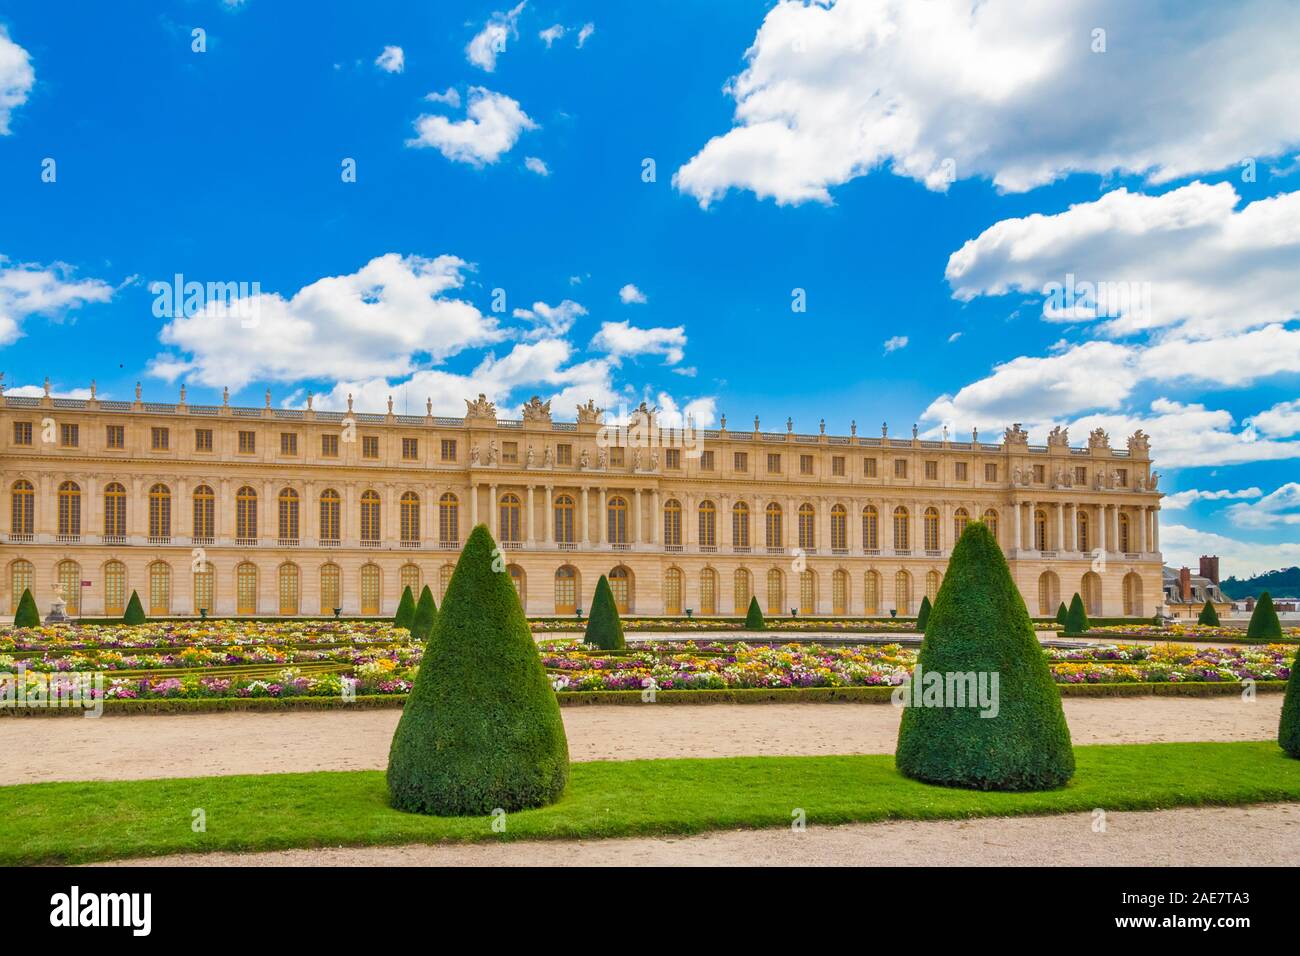 Vue panoramique parfaite de la façade de l'aile sud du château de Versailles avec un sentier de gravier, pelouse, fleurs et arbres en forme de cône, typique de... Banque D'Images